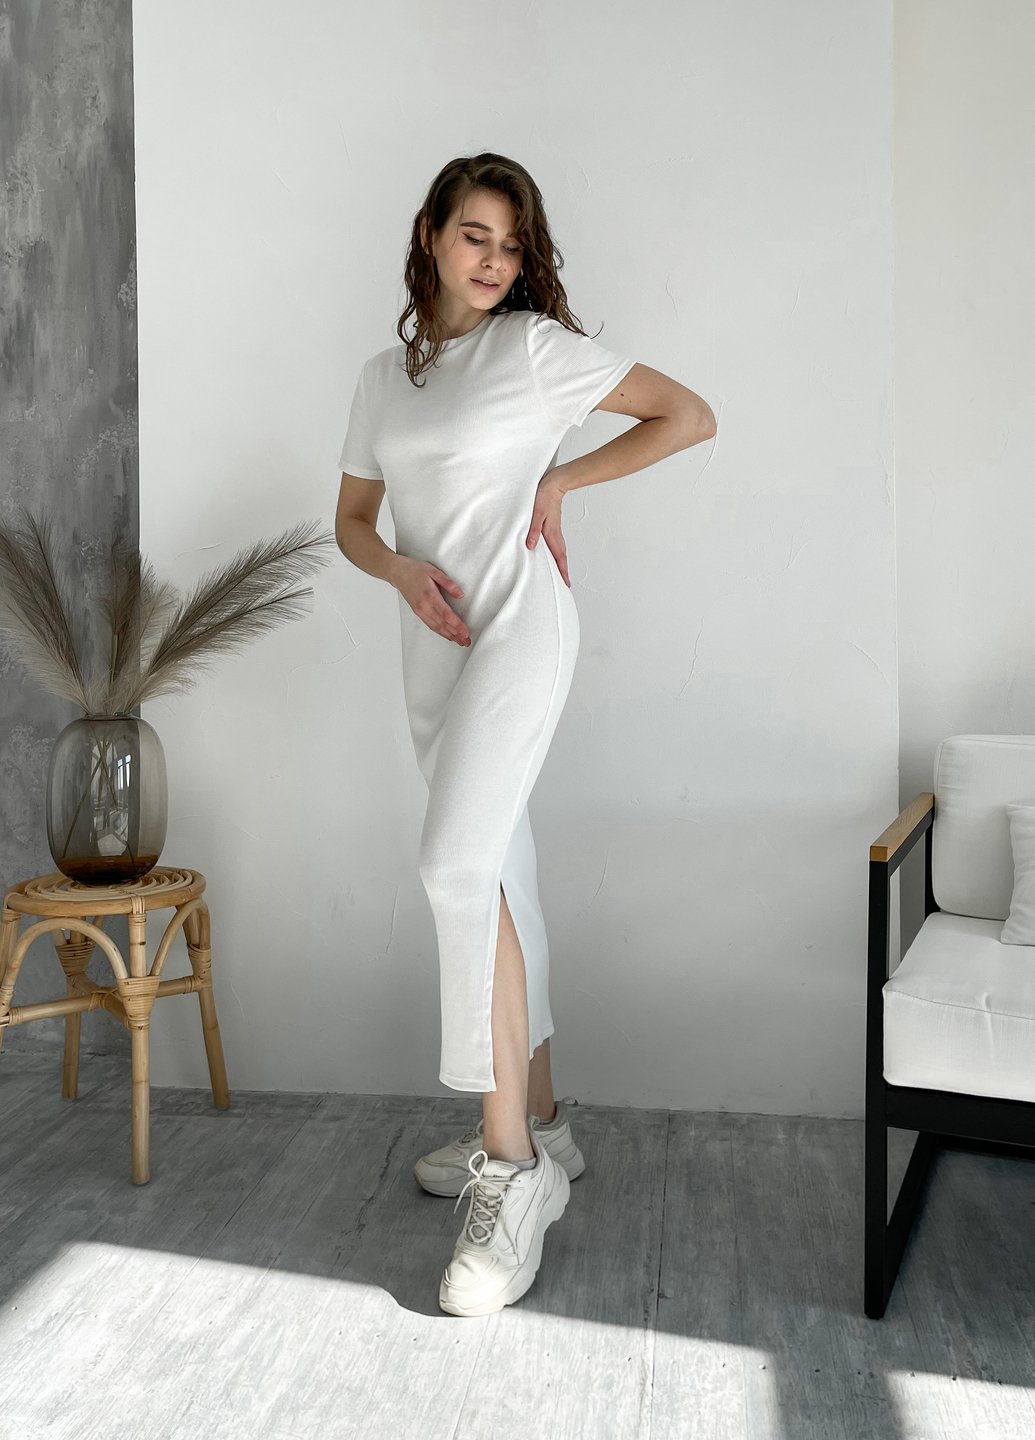 Купить Длинное платье женское в рубчик белое Merlini Кассо 700000126, размер L-2XL (46-50) в интернет-магазине